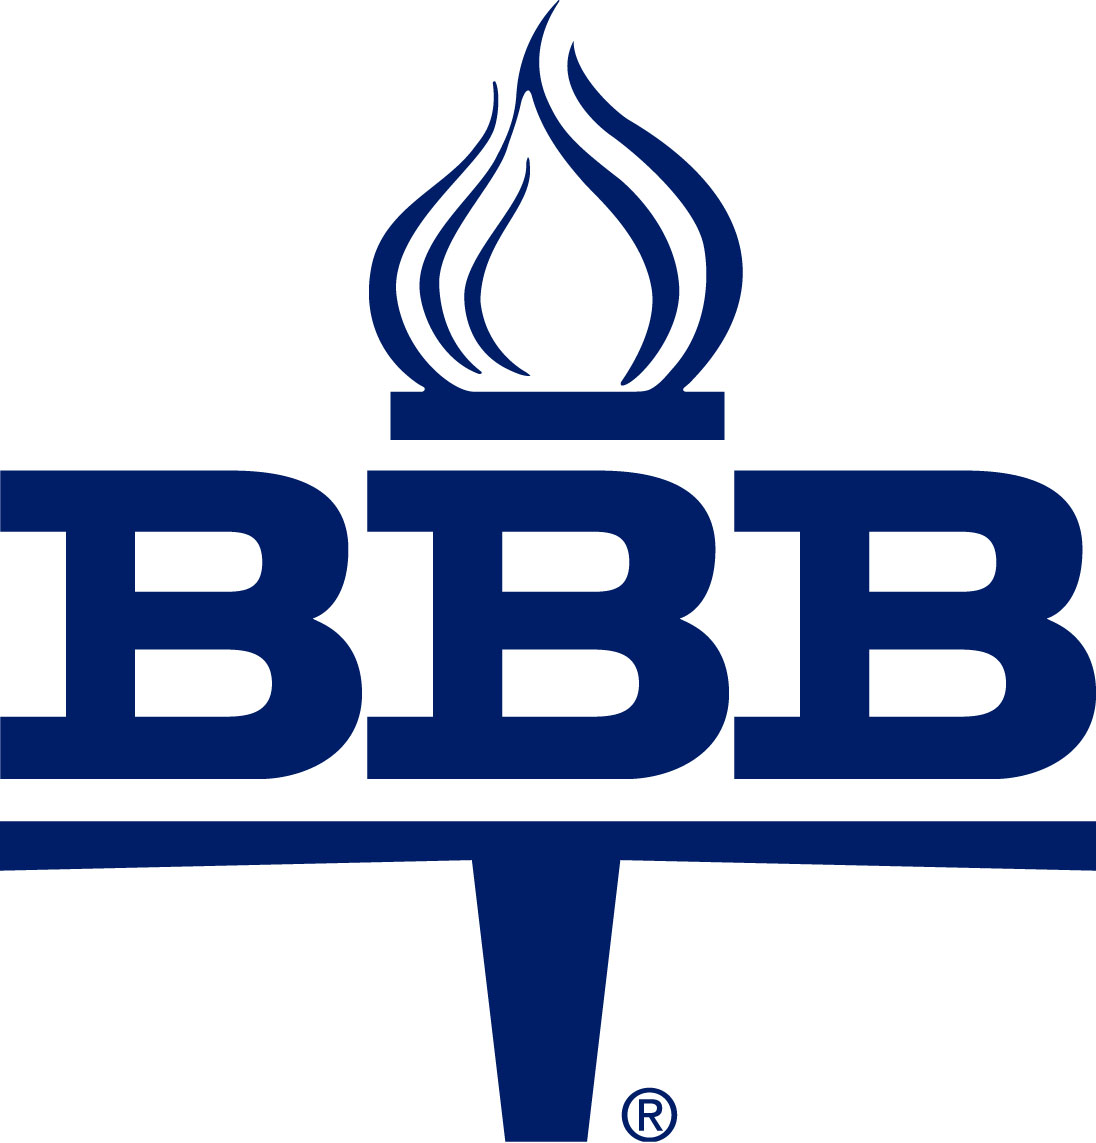 Better Business Bureau A+ Logo photo - 1